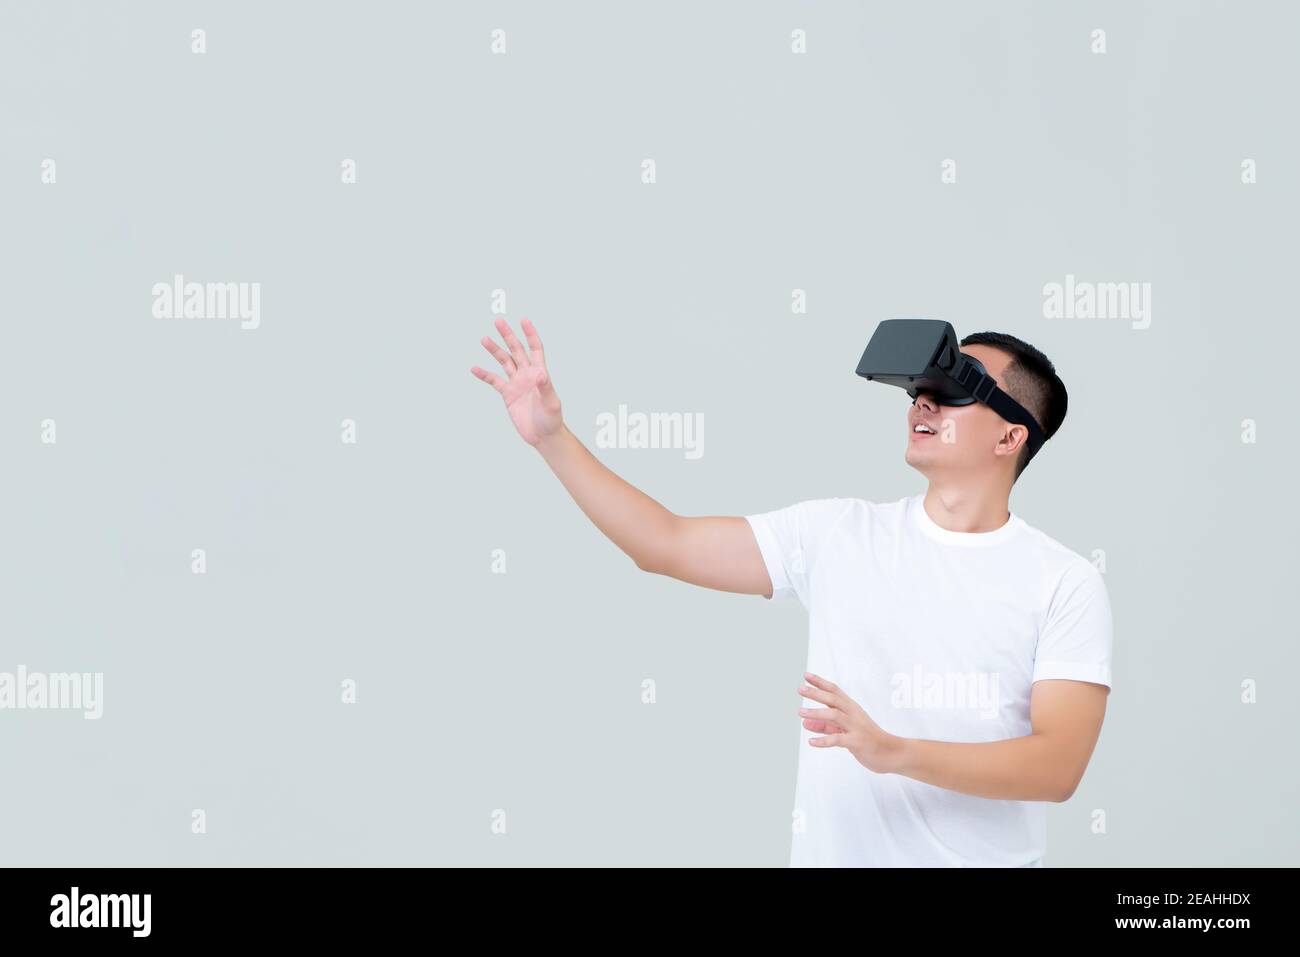 Aufgeregter Mann, der Hand ausstreut, während er 3D Simulationsvideo ansieht Von Virtual Reality oder VR-Brille auf hellgrauem Hintergrund Stockfoto